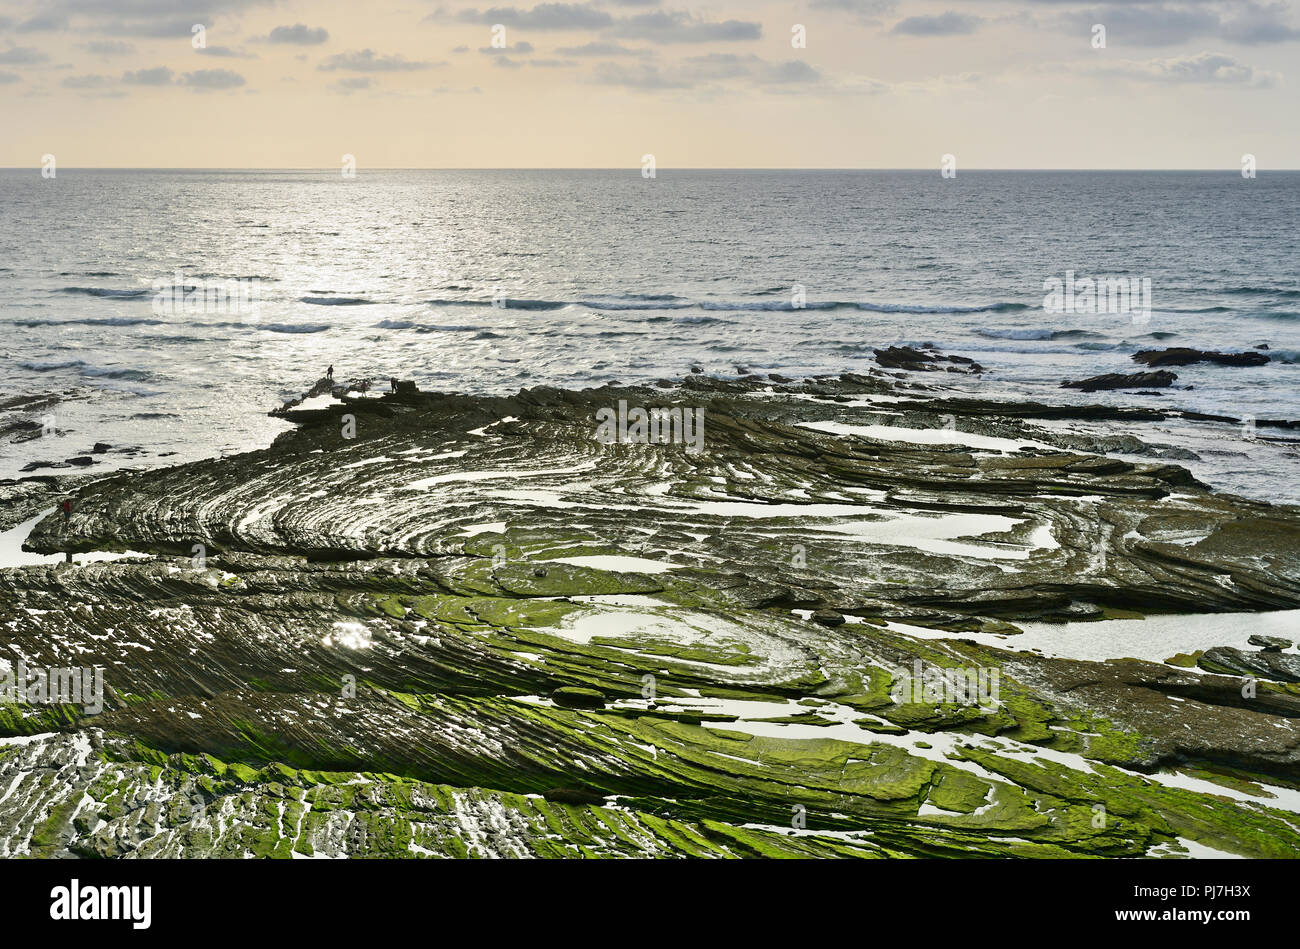 Formaciones de roca. Parque Natural do Sudoeste Alentejano e Costa Vicentina, la salvaje costa Atlántica de Europa. Algarve, Portugal Foto de stock